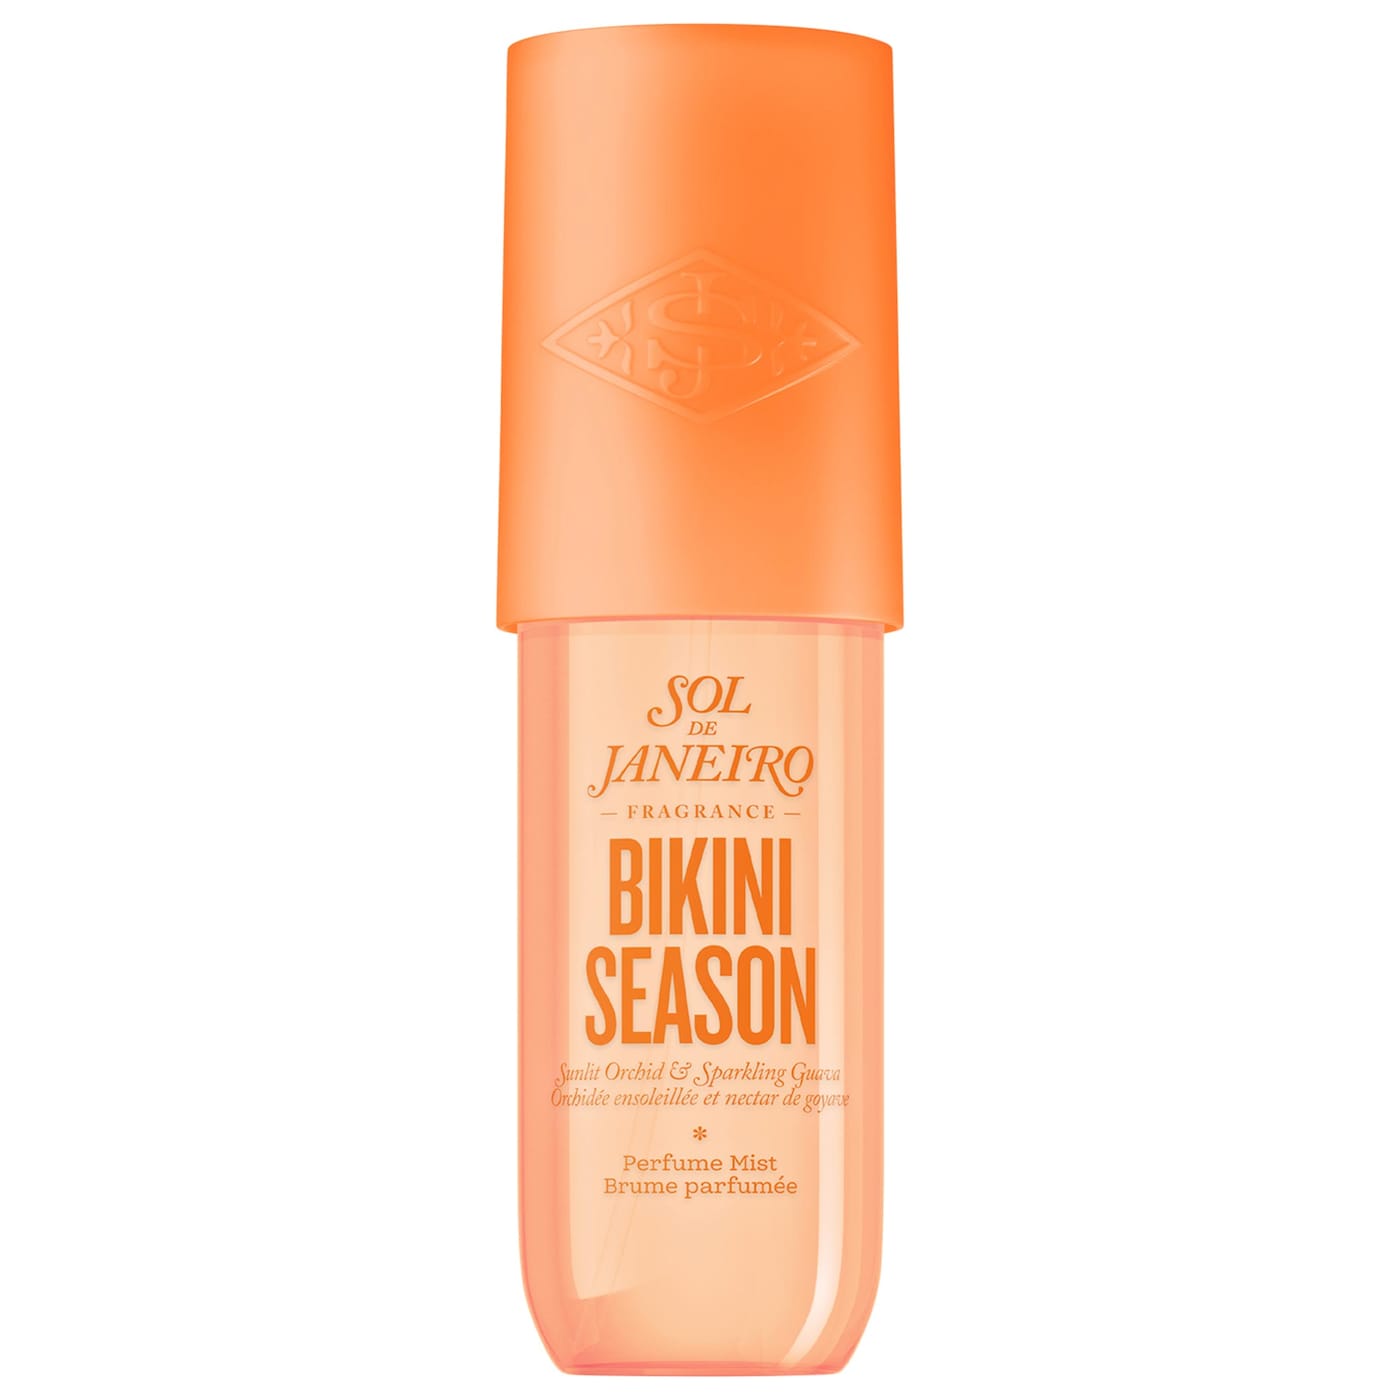 SOL DE JANEIRO - Bikini Season Perfume Mist